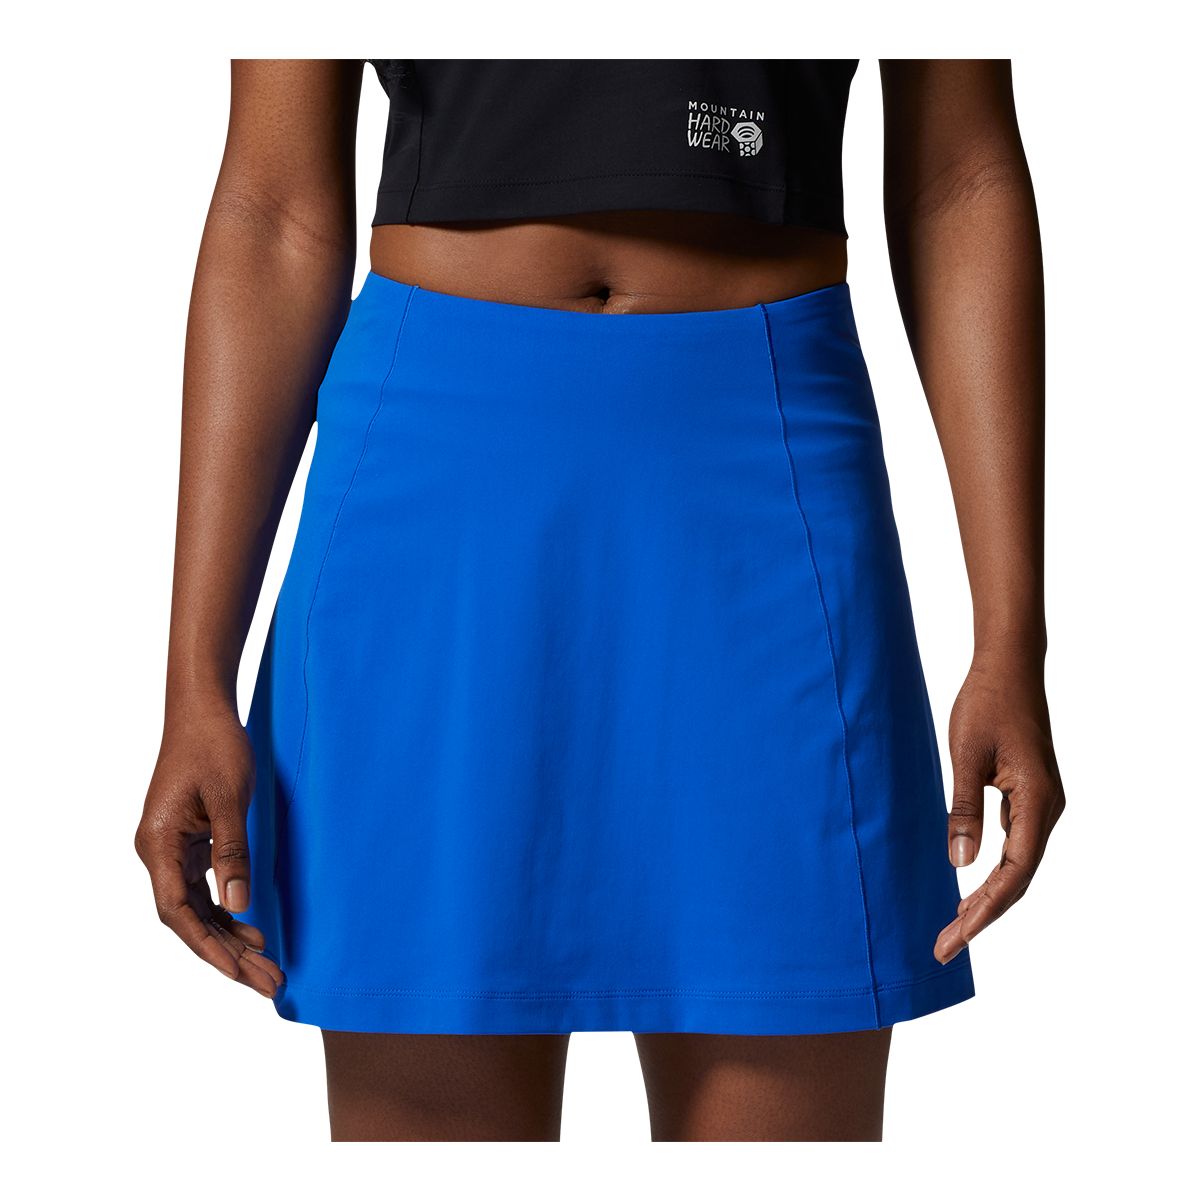 Mountain Hardwear Women's Dynama High Rise Bermuda Shorts